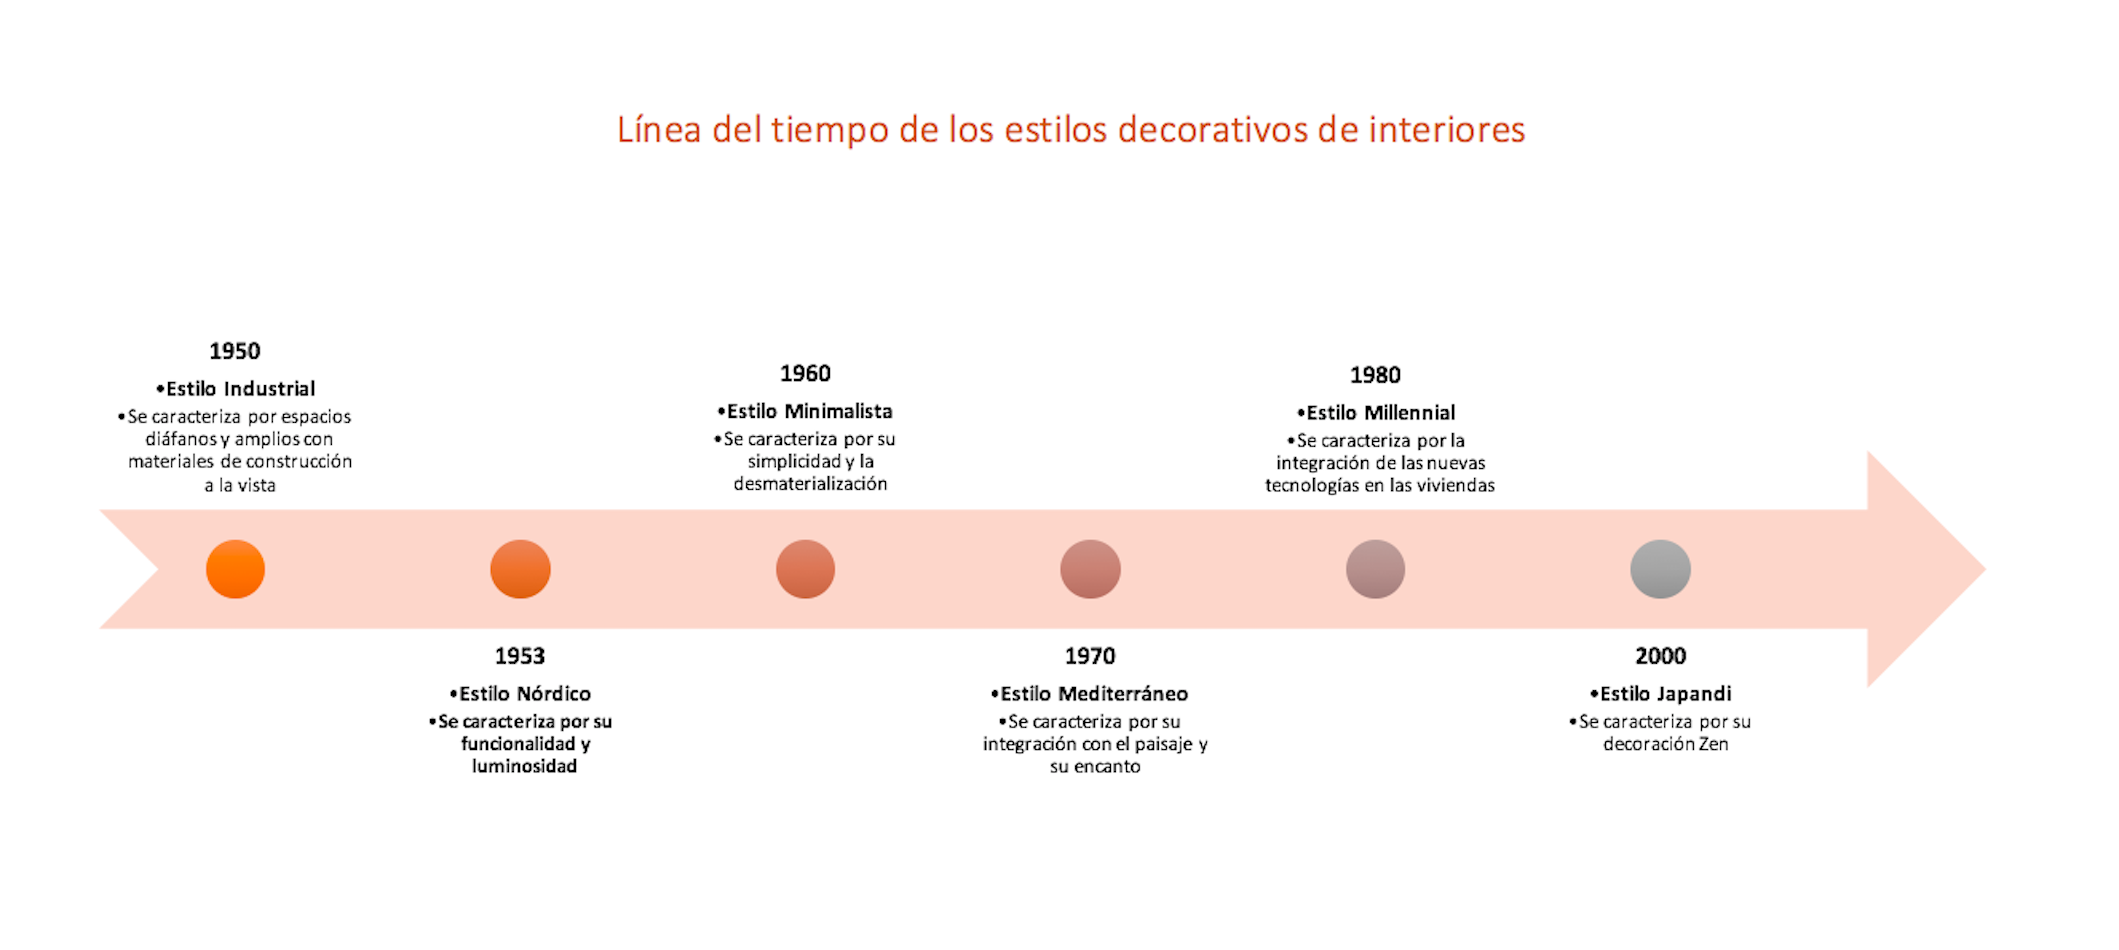 Timeline de los estilos decorativos más utilizados